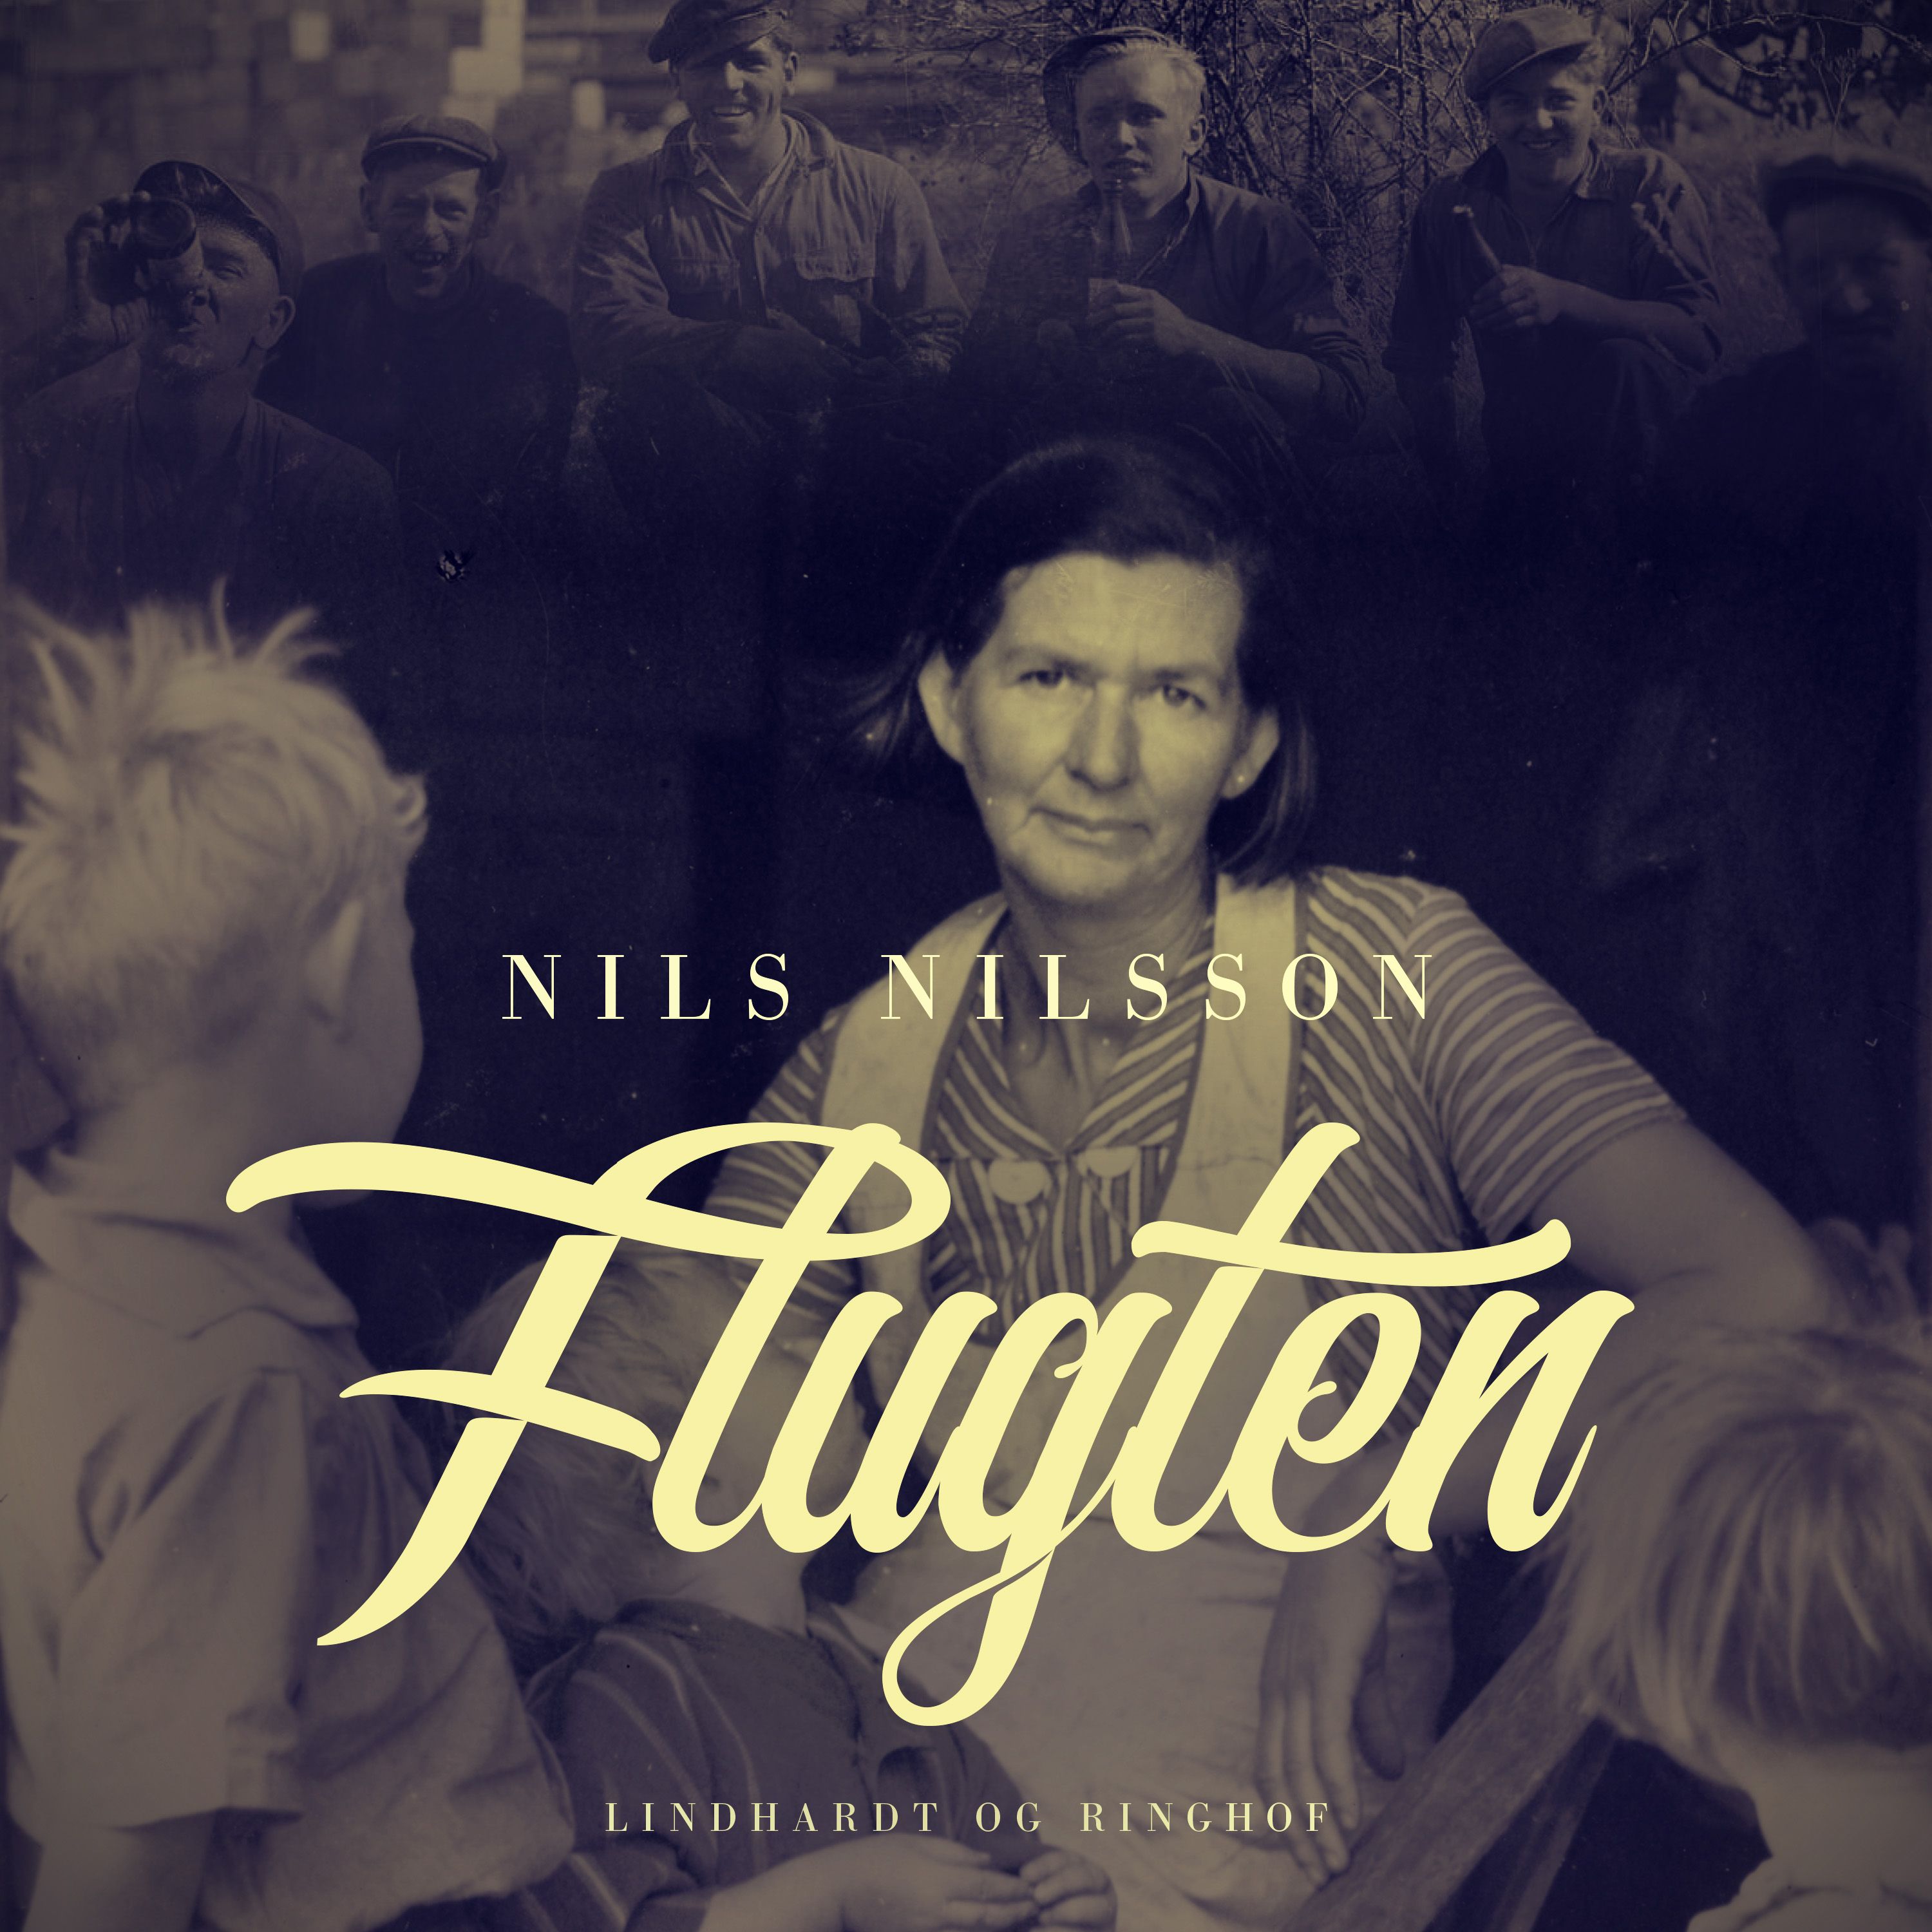 Flugten, lydbog af Nils Nilsson